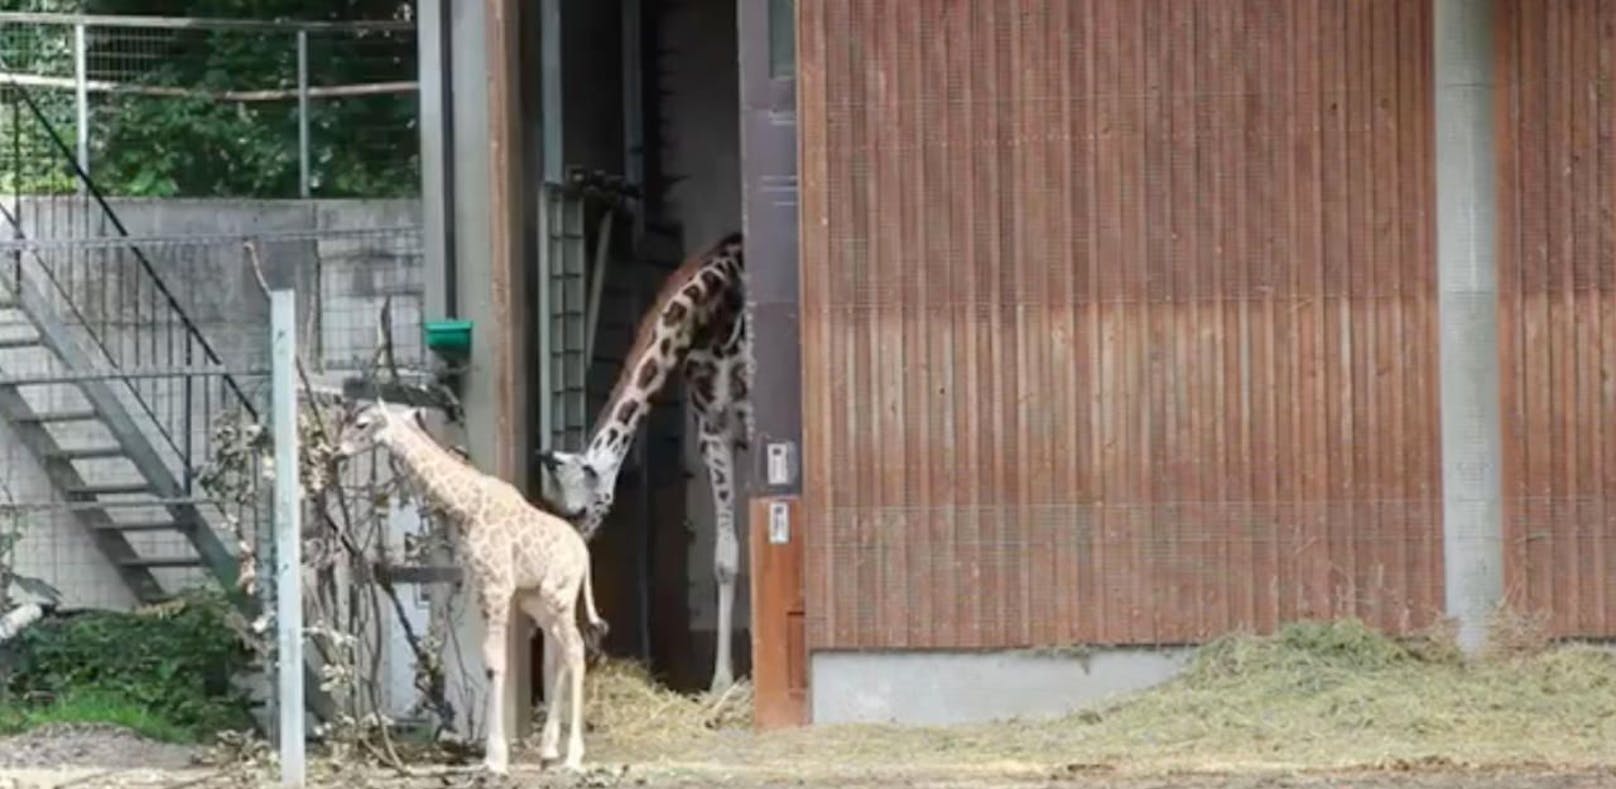 Zoo Schmiding: Erster Ausflug der Baby-Giraffe